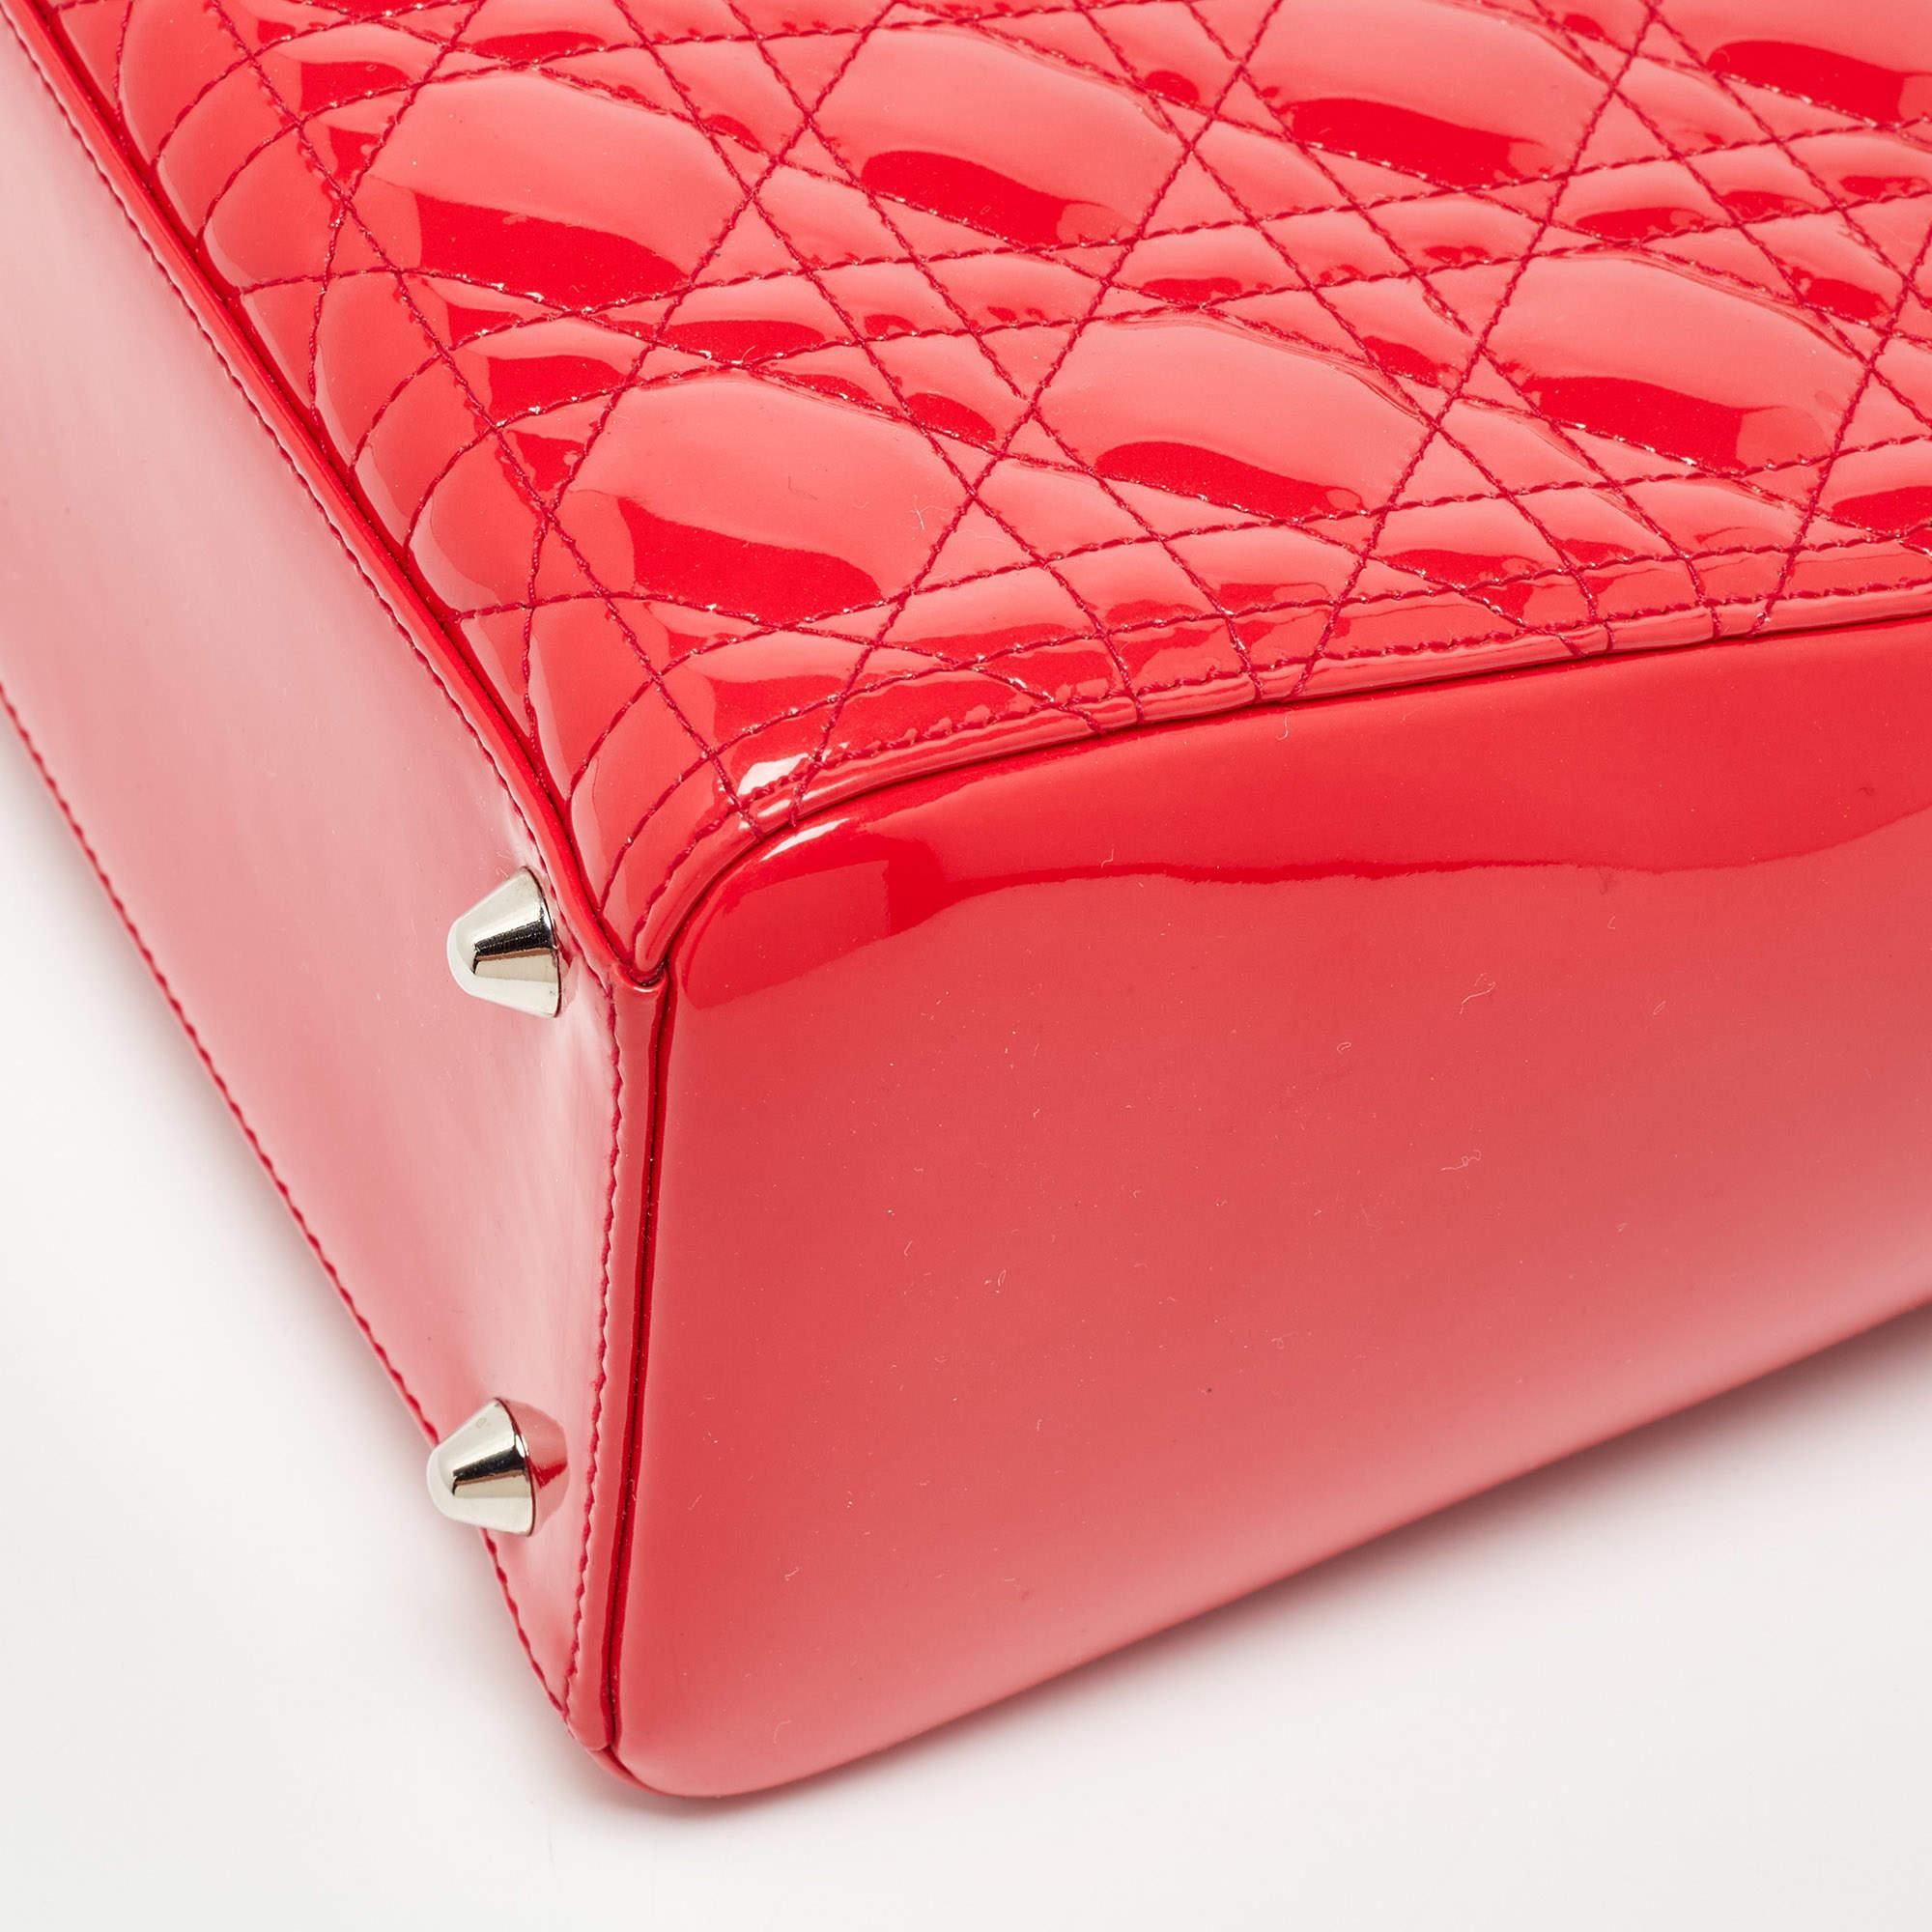 Dior - Grand sac cabas Lady Dior en cuir verni rouge cannage 3